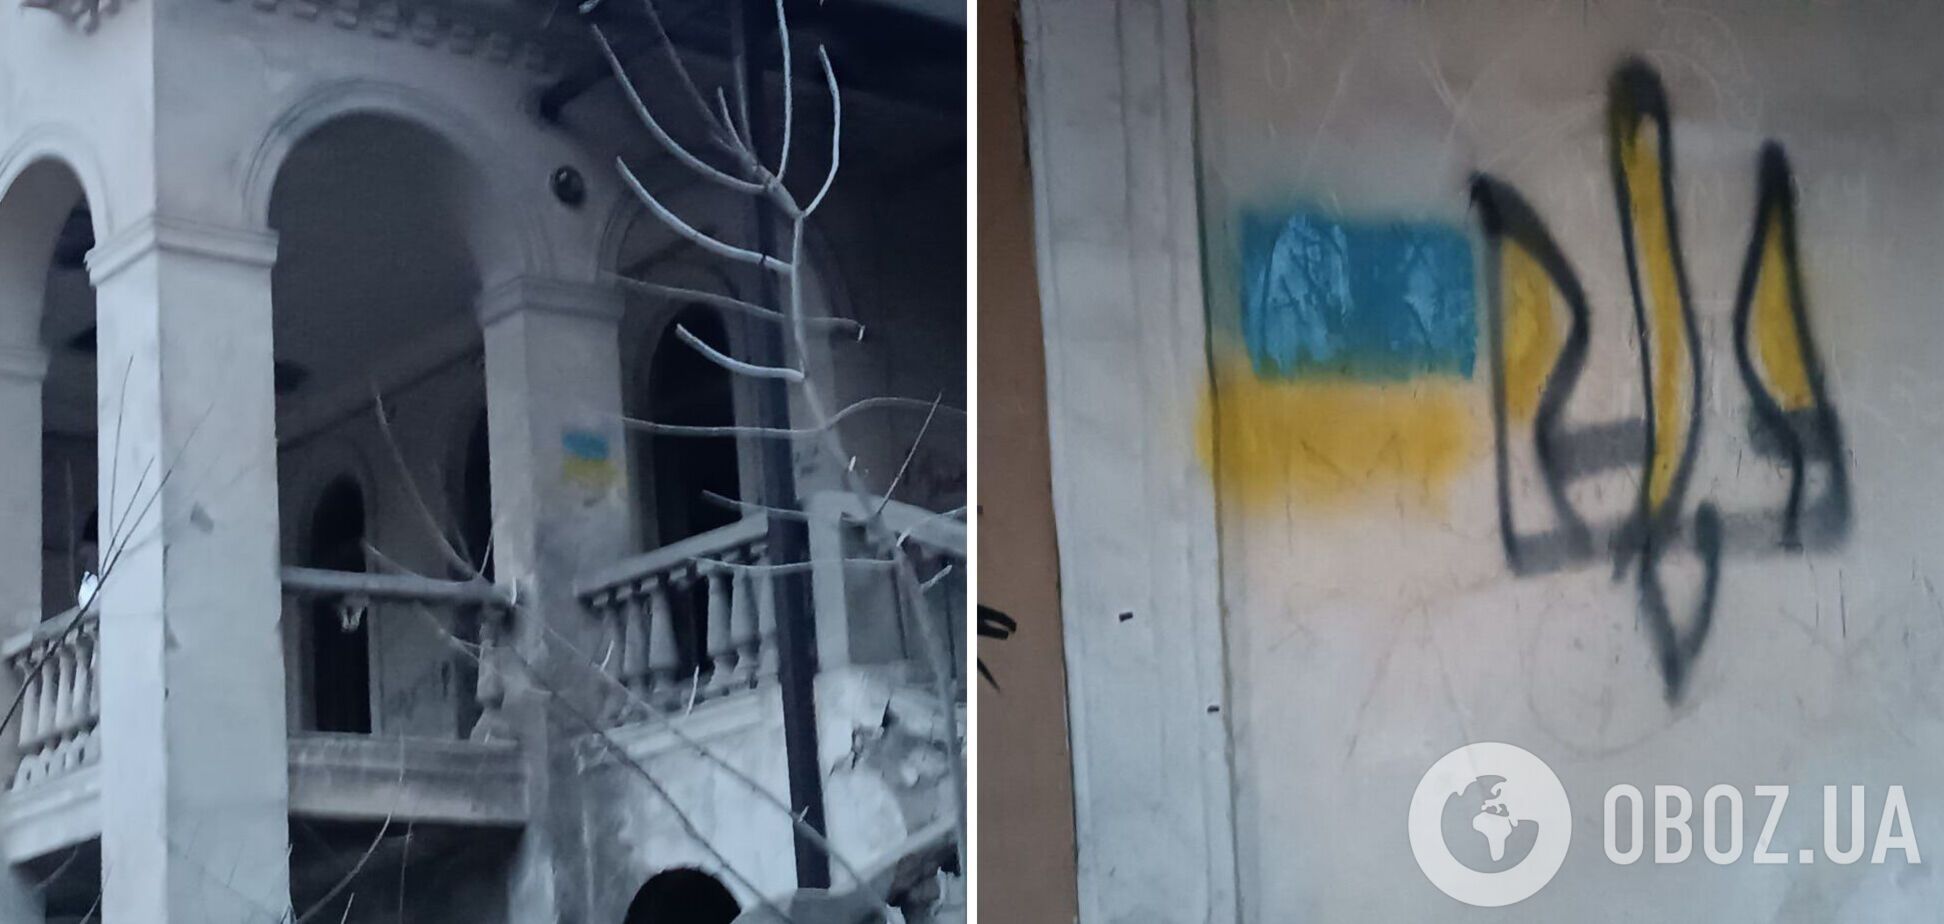 Луганск и Донецк не сломались! Патриоты напомнили оккупантам, что им пора 'на выход'. Фото